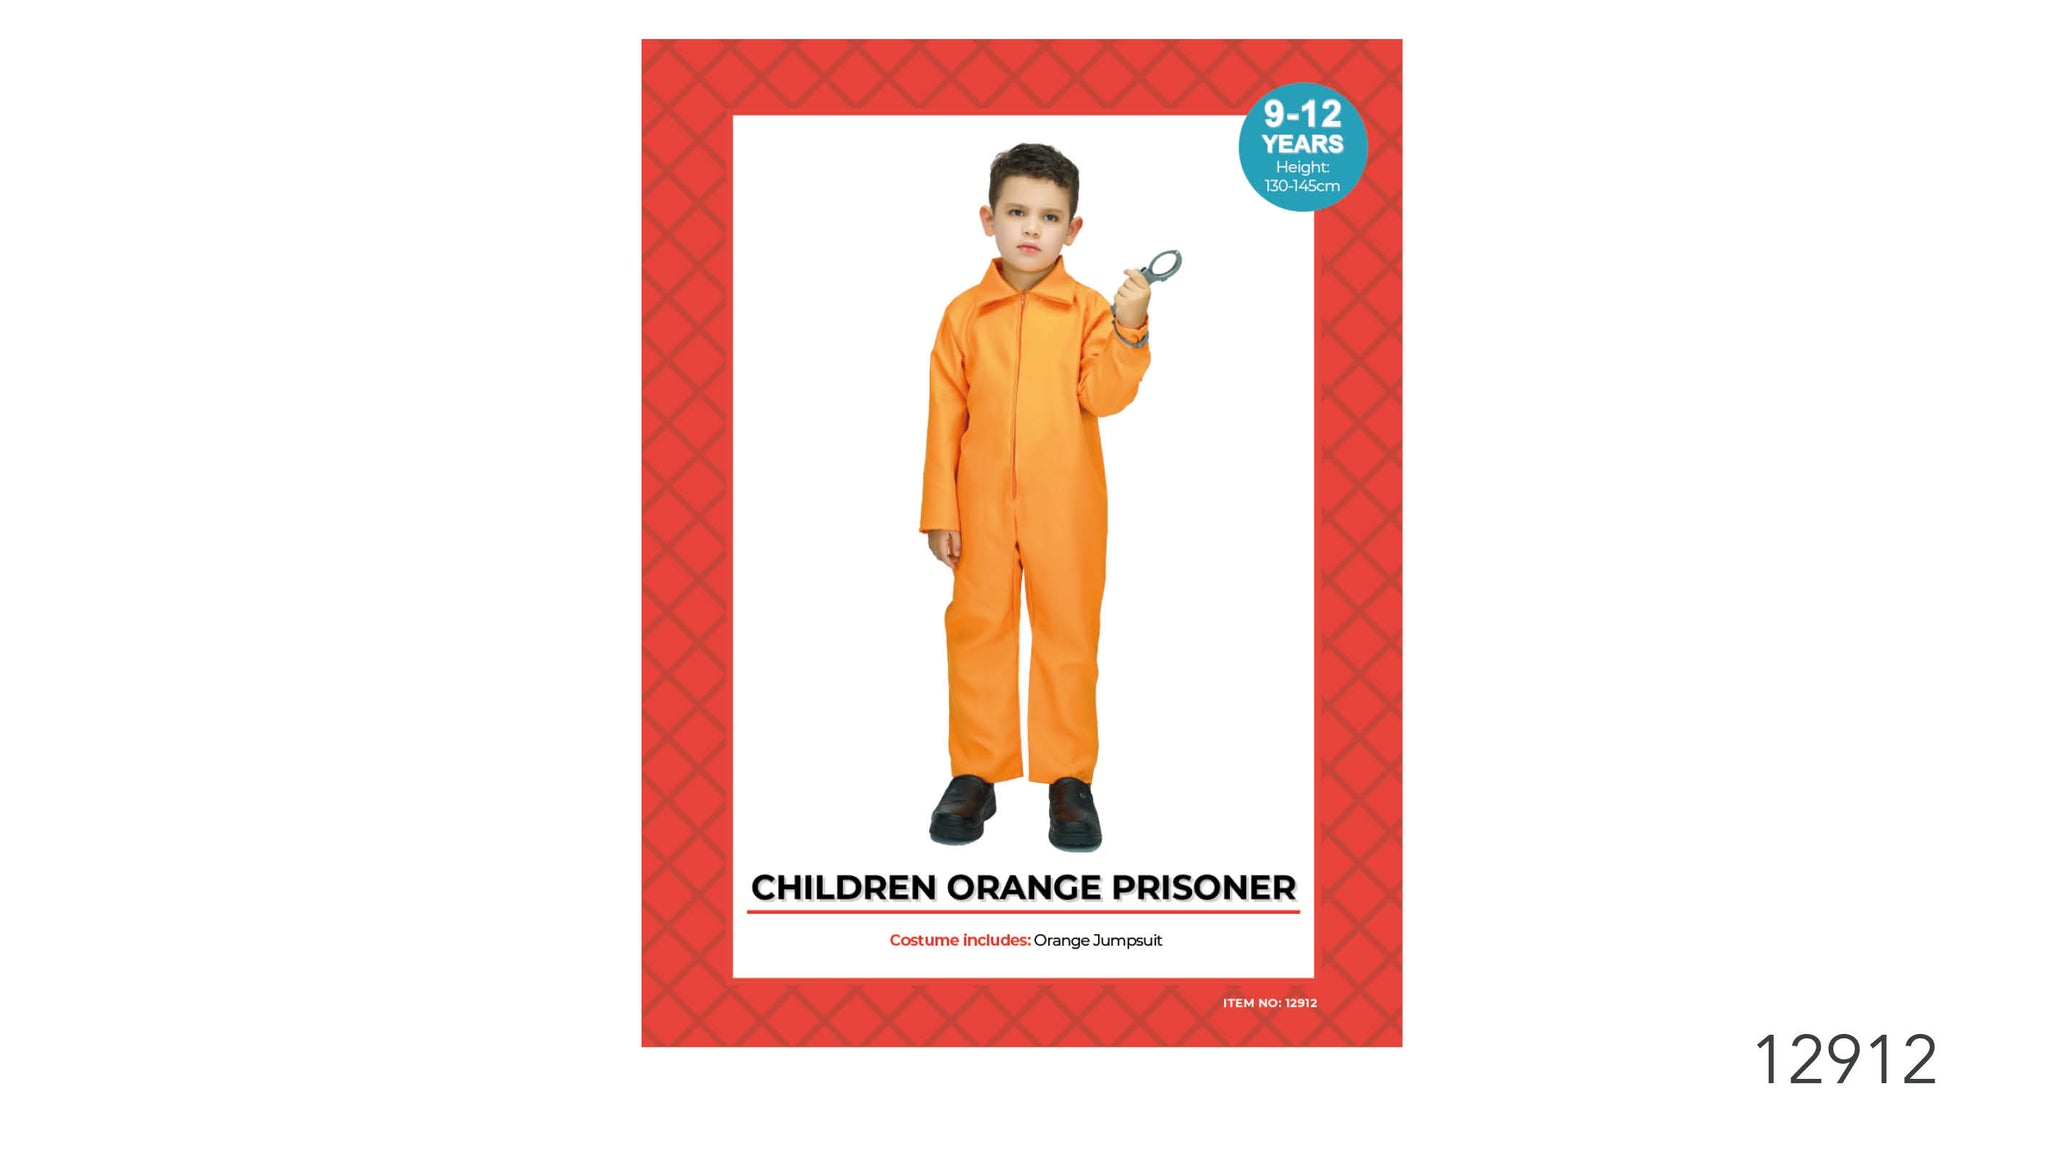 Children Orange Prisoner Costume